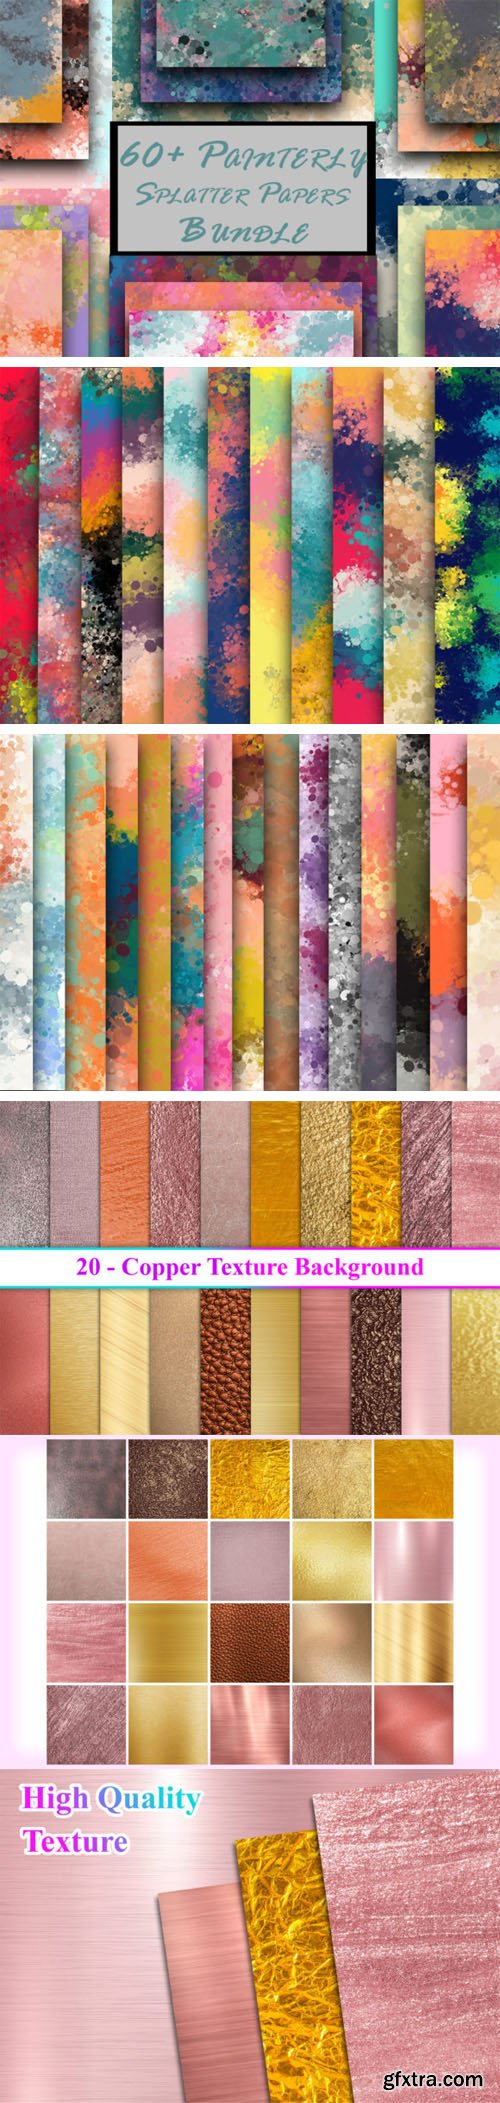 4 Fantastic Textures Bundles - 60 Backgrounds